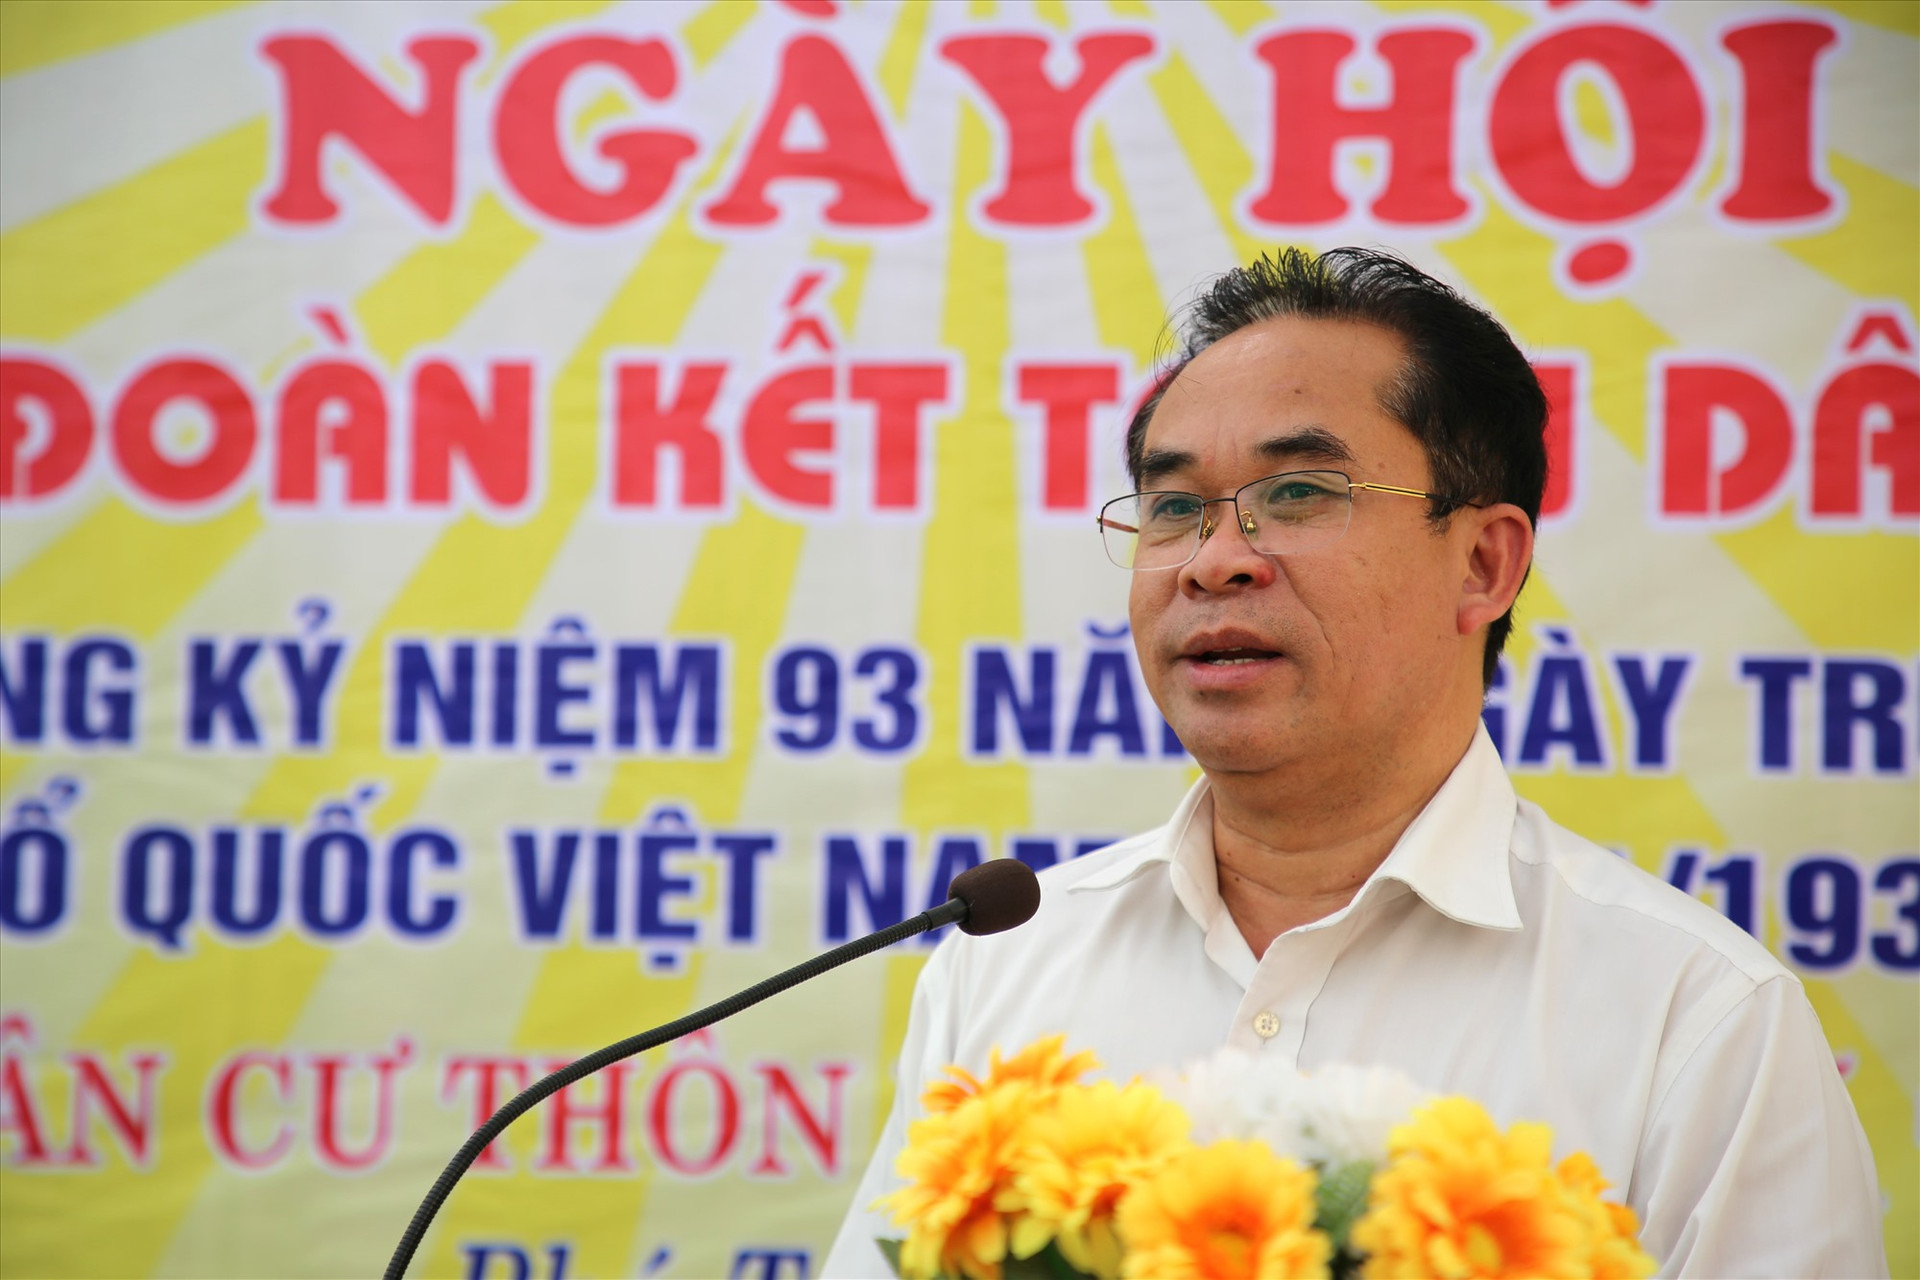 Phó Chủ tịch UBND tỉnh Trần Anh Tuấn phát biểu tại ngày hội. Ảnh: A.N